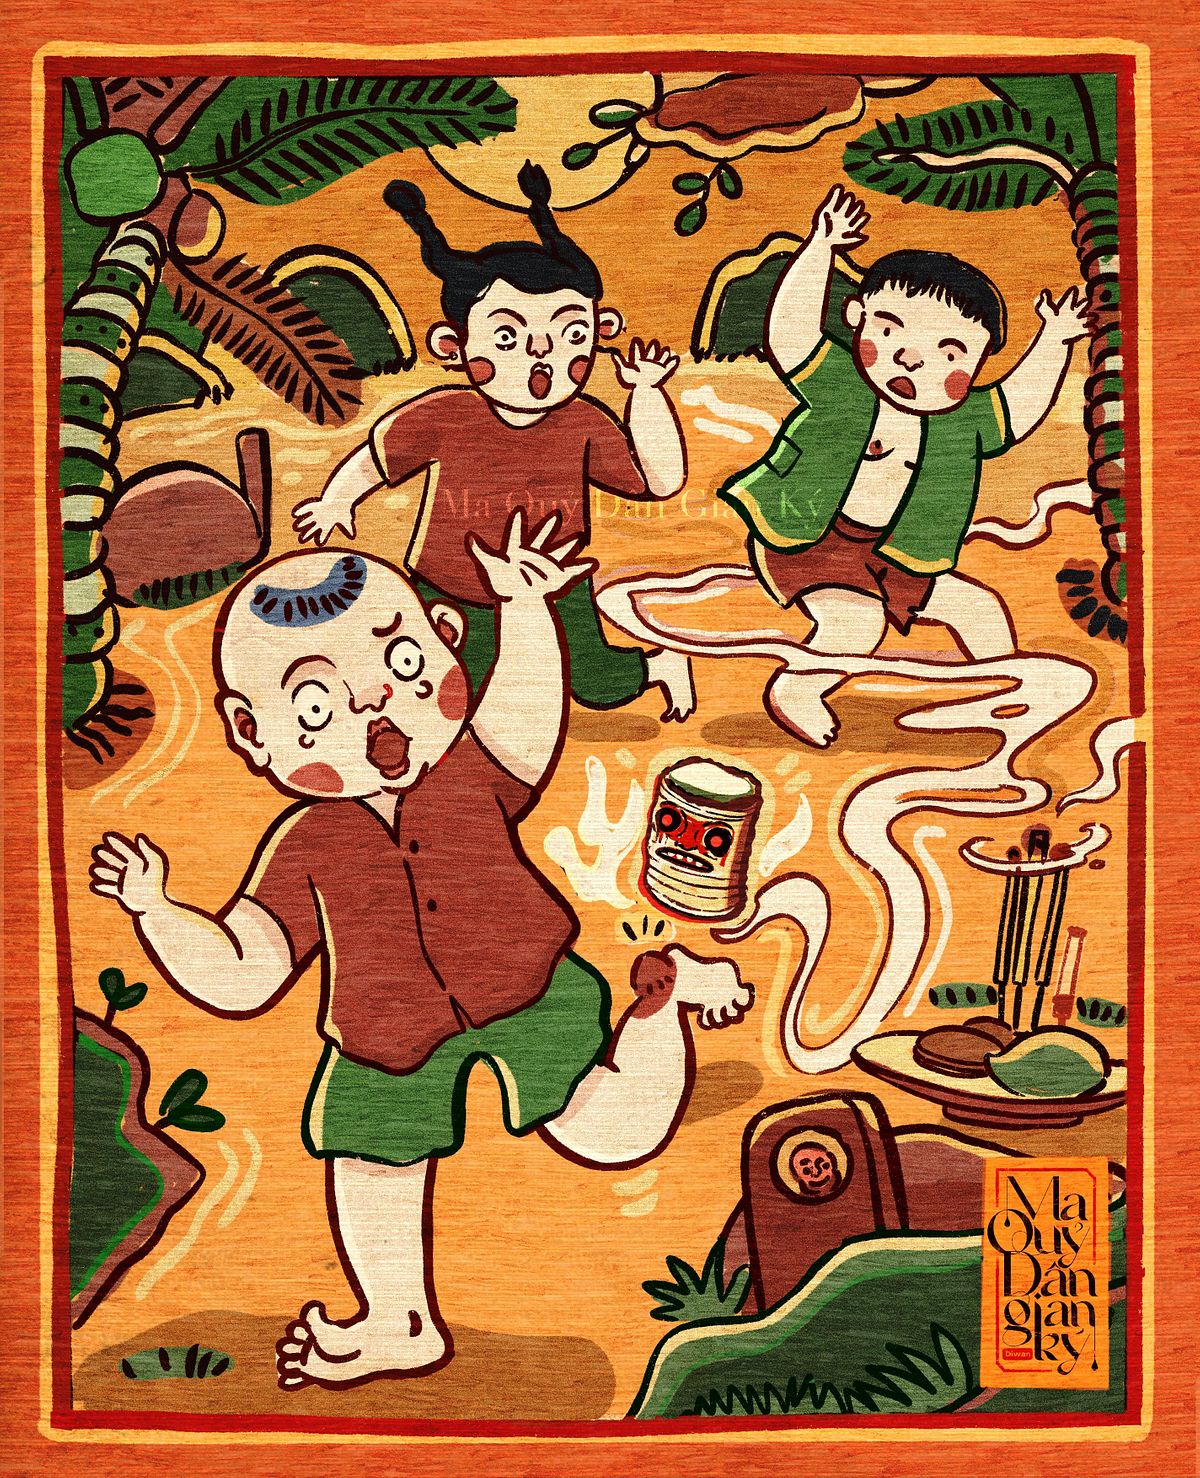 Hãy khám phá trò chơi dân gian đơn giản - một phần không thể thiếu của văn hóa Việt Nam! Những con quỷ, ma quỷ được tạo thành từ giấy và tùng, với những đường nét tinh tế chắc chắn sẽ khiến bạn cười đến té ghế. Hình ảnh này đem lại cho chúng ta niềm vui và sự phấn khích như lúc thơ ấu.